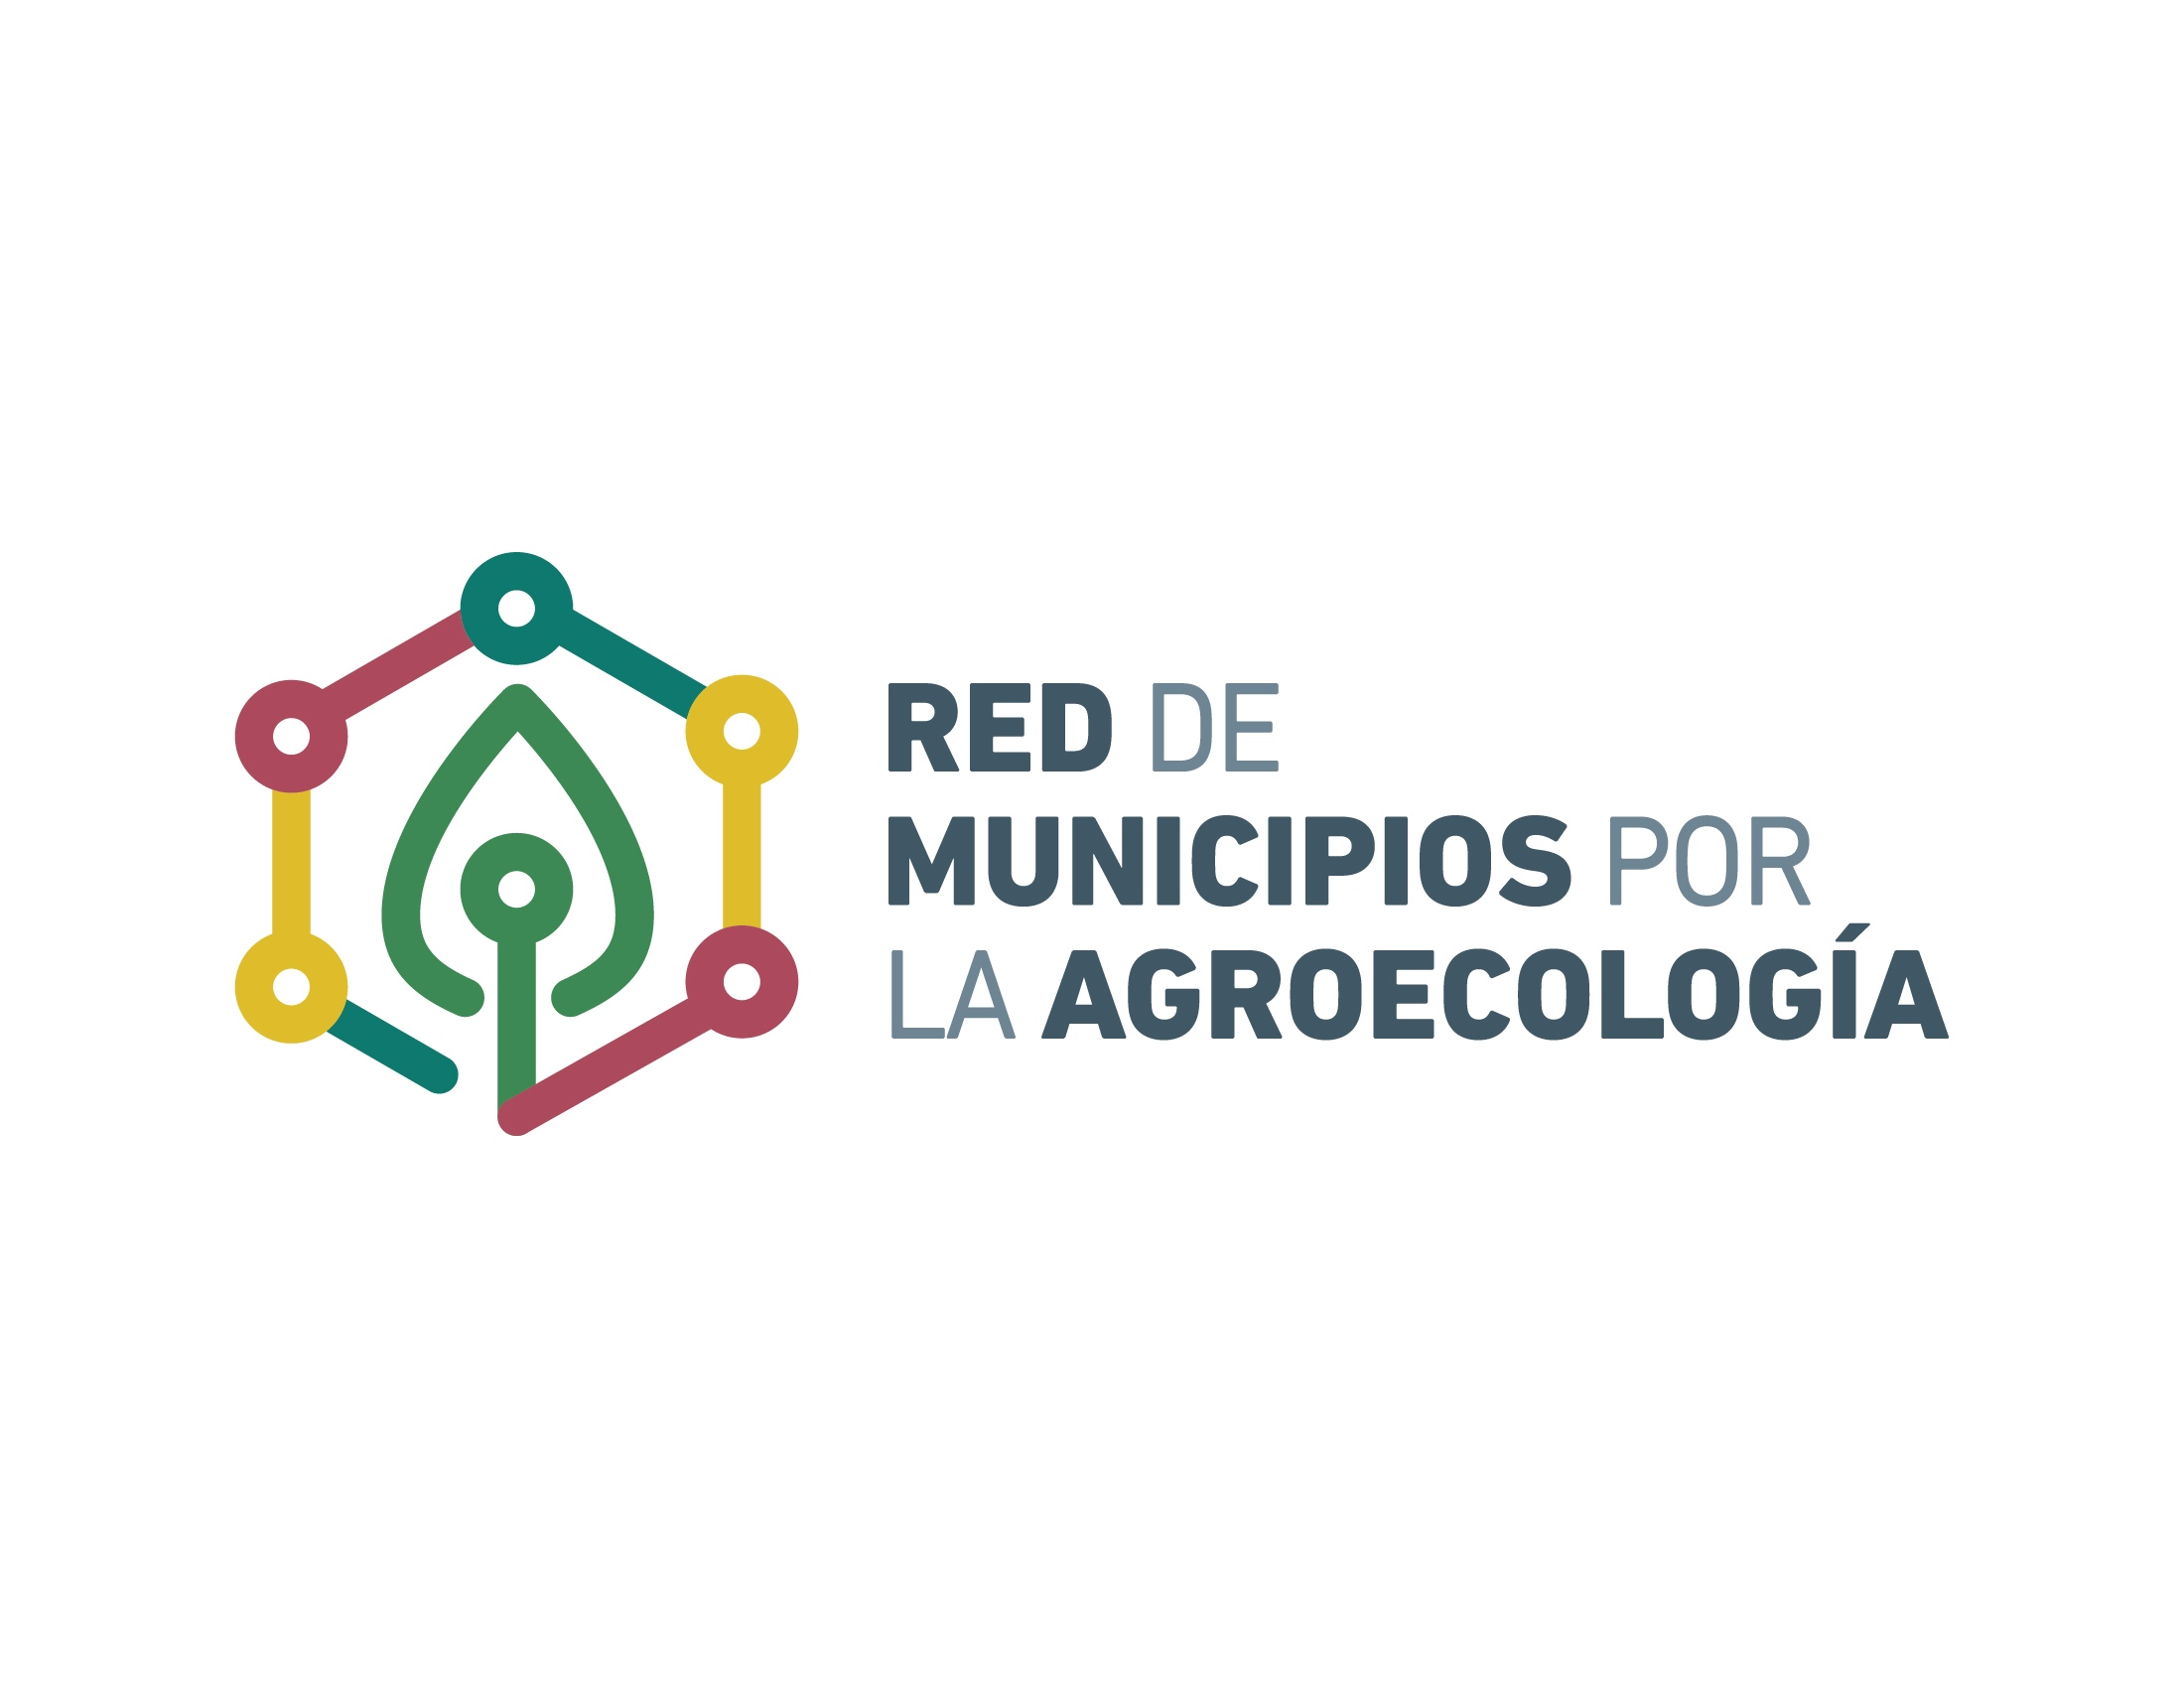 Red de Municipios por la Agroecología